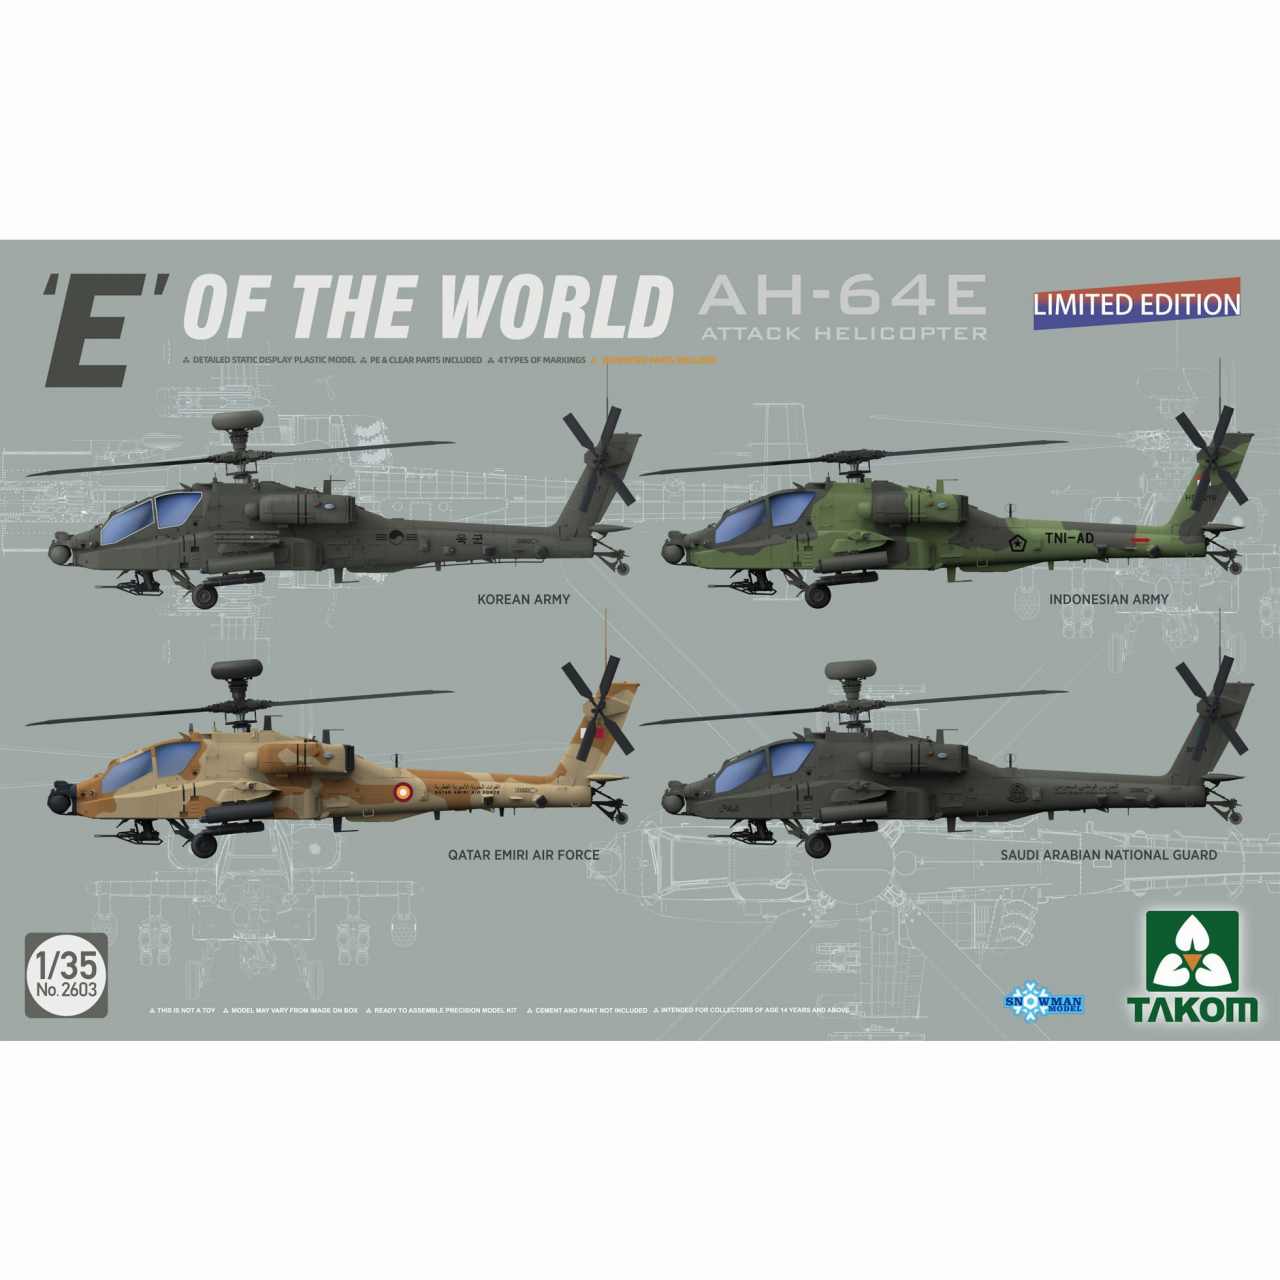 【新製品】2603)1/35 ｢世界のE｣ AH-64E アパッチ 攻撃ヘリコプター (限定版)